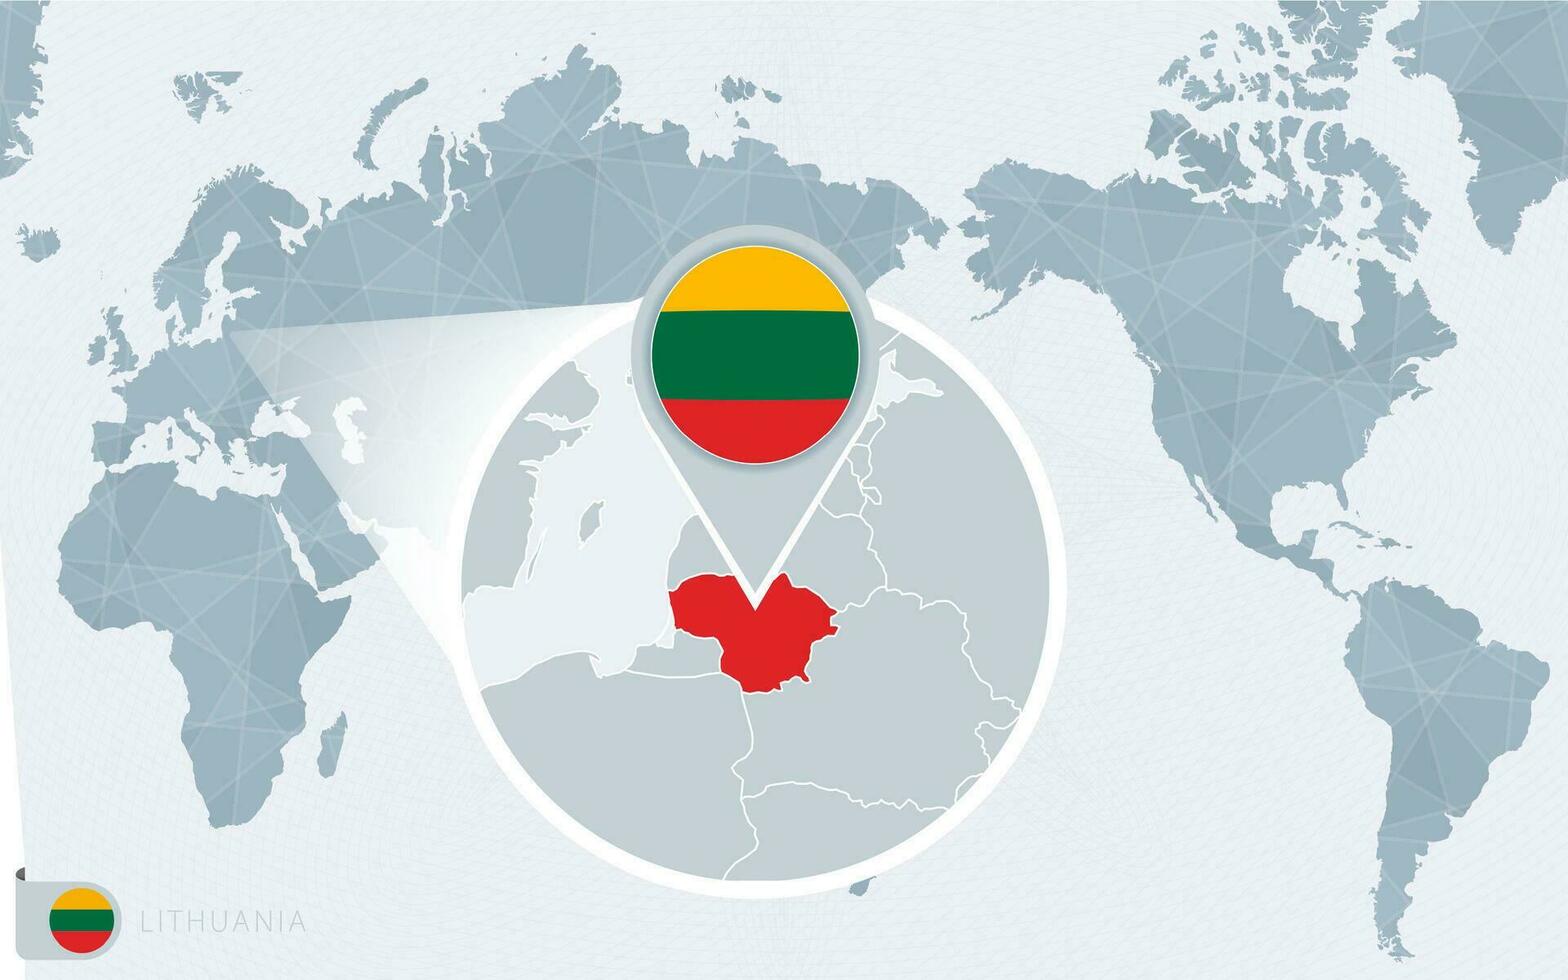 grote Oceaan gecentreerd wereld kaart met uitvergroot Litouwen. vlag en kaart van Litouwen. vector